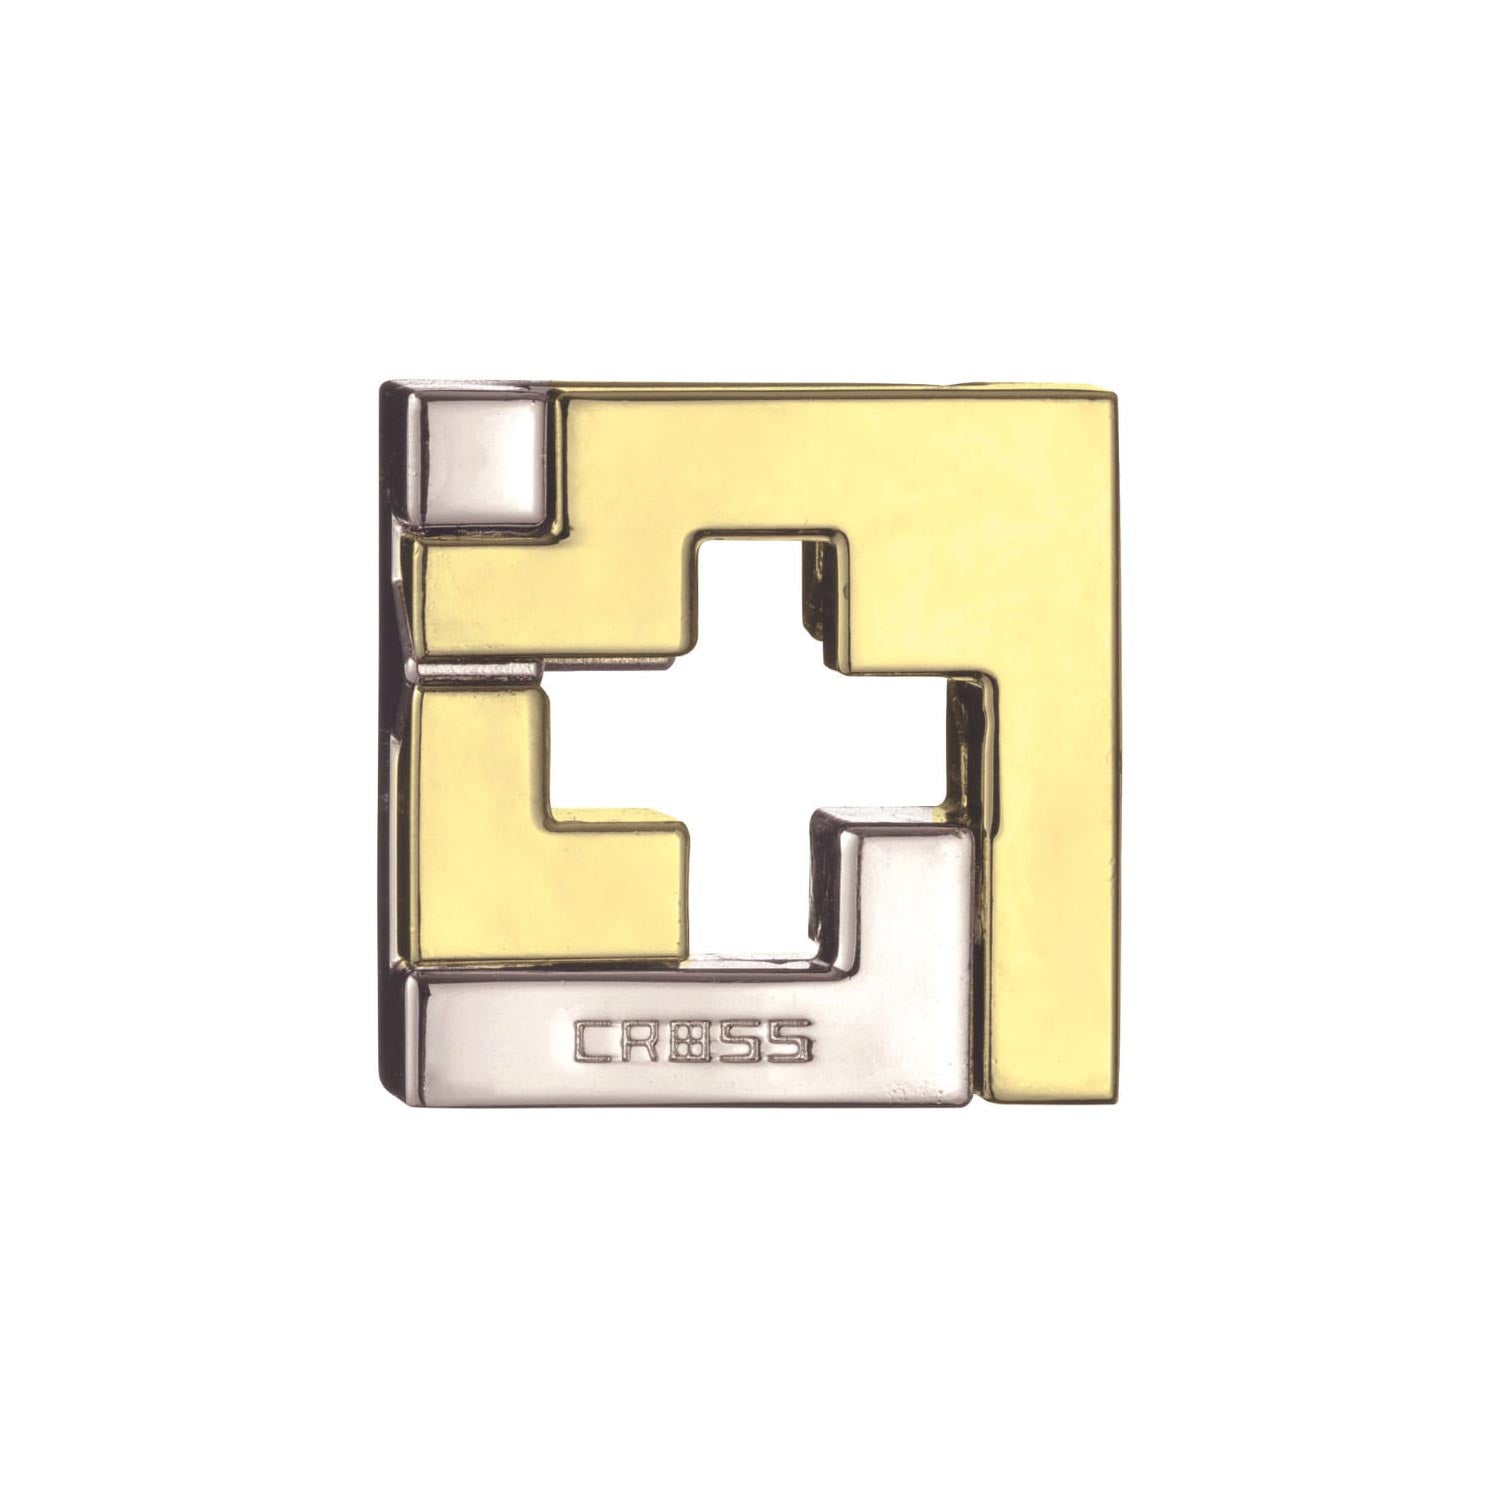 Jigsaw 29 - Hanayama Version, Packing Puzzles